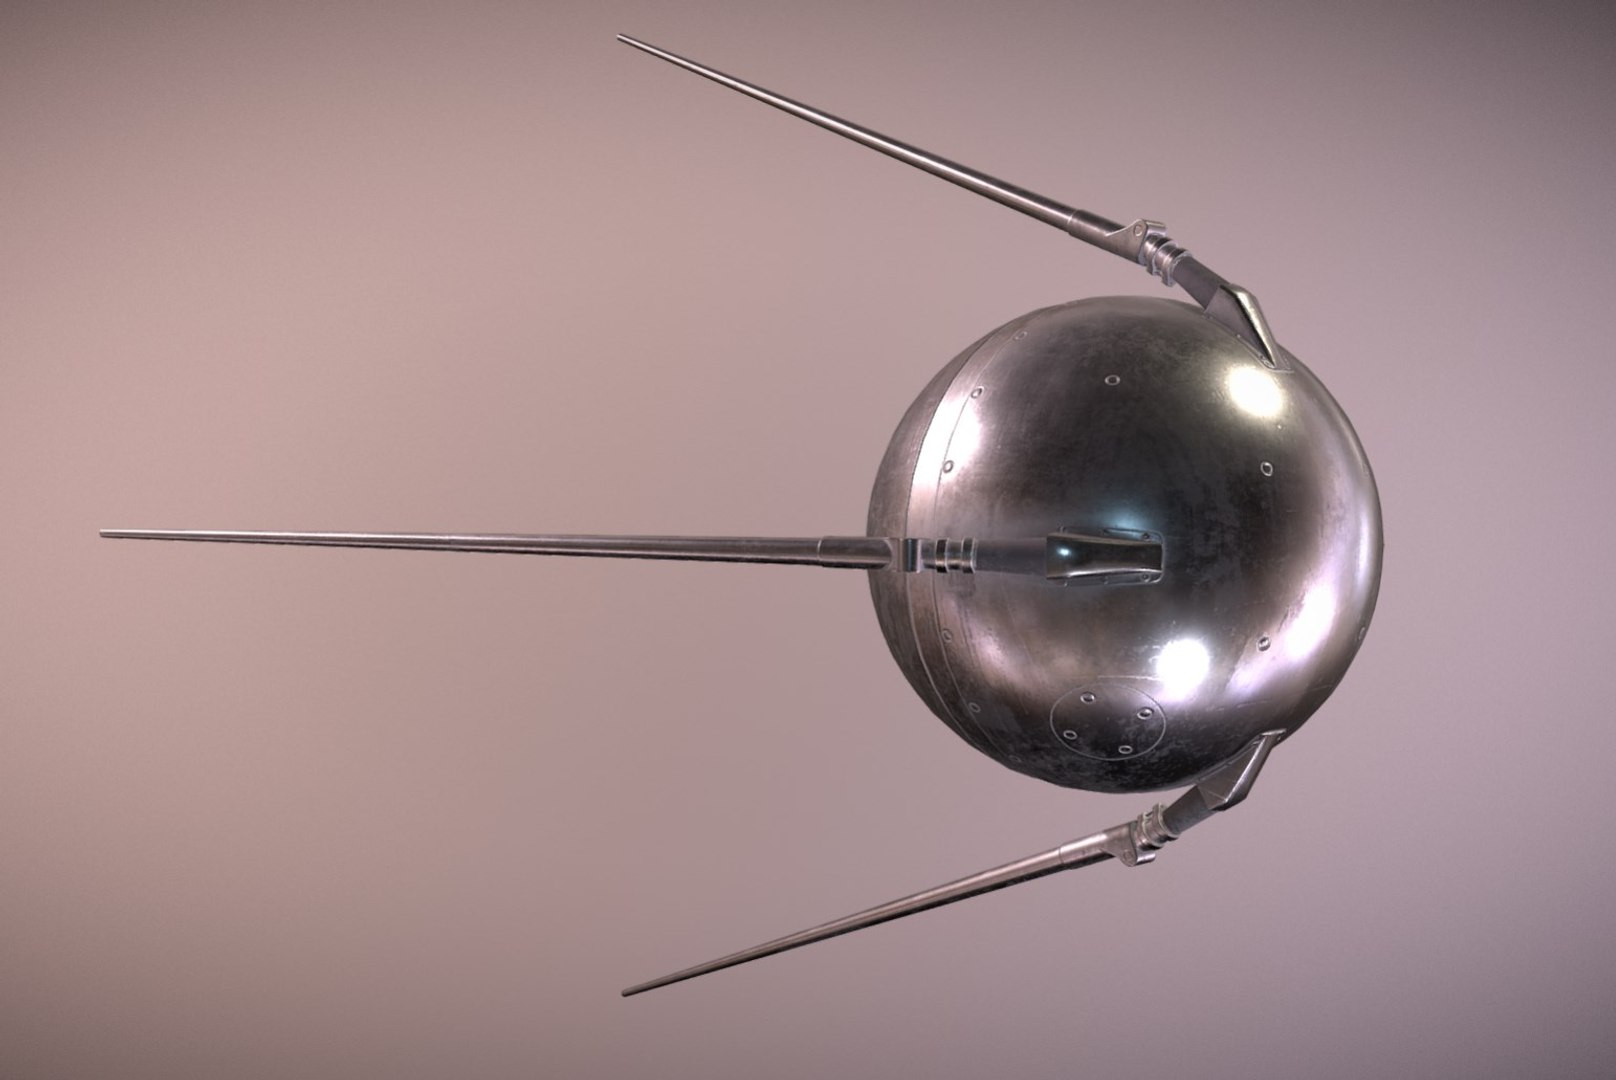 Название первого искусственного спутника. Спутник земли ПС-1. Спутник-1 искусственный Спутник. Искусственный Спутник земли Спутник-1. Первый искусственный Спутник 1957 г.